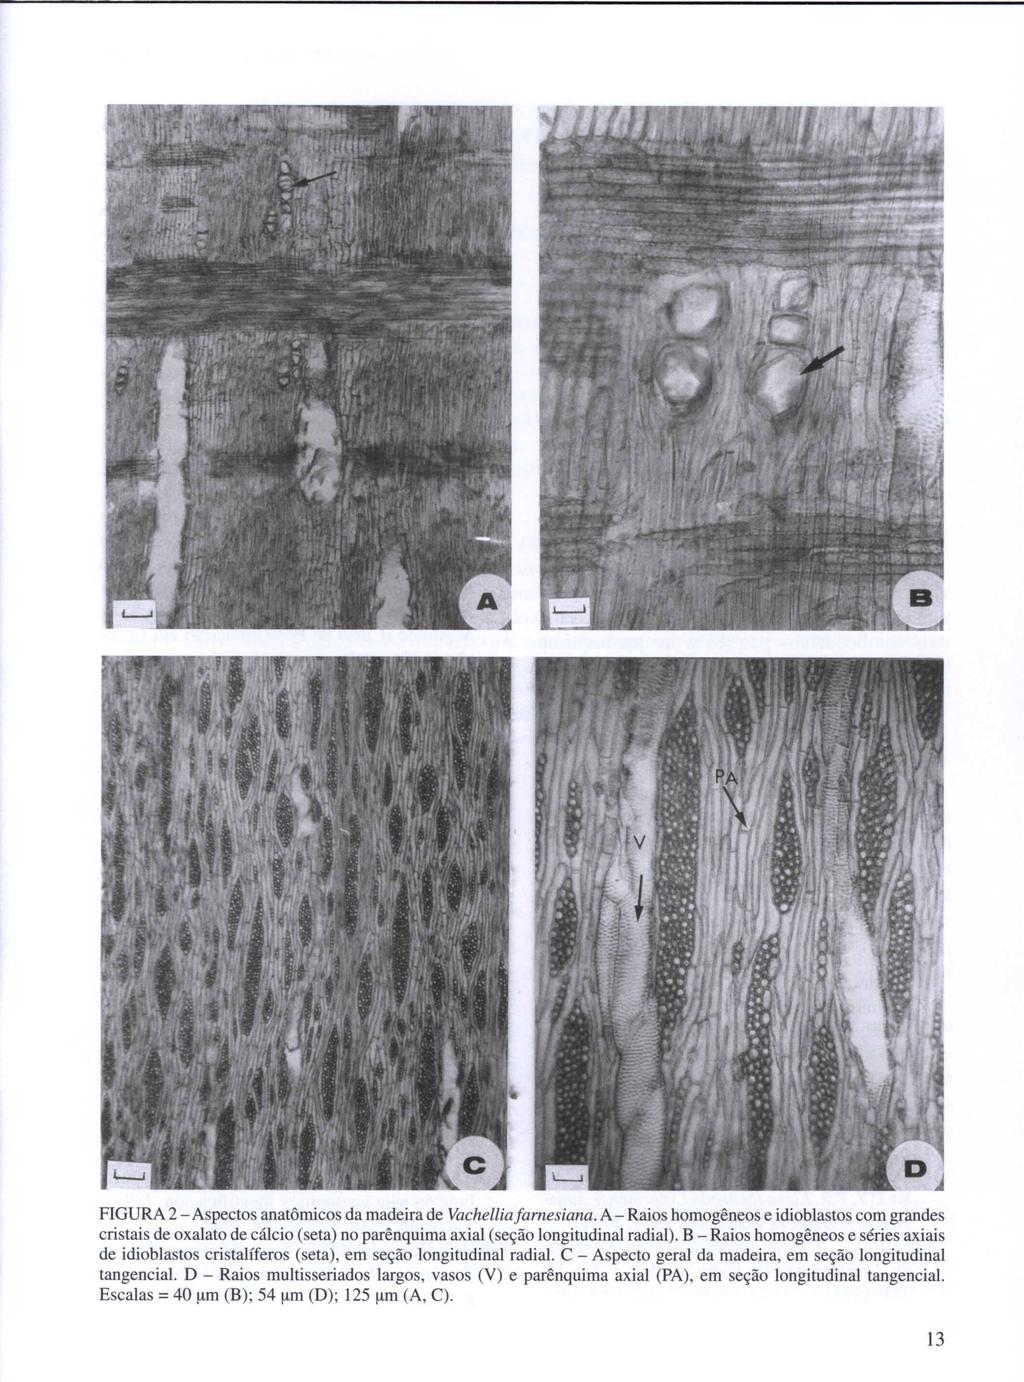 FIGURA 2 - Aspectos anatômicos da madeira de Vachelliafarnesiana. A - Raios homogêneos e idioblastos com grandes cristais de oxalato de cálcio (seta) no parênquima axial (seção longitudinal radial).